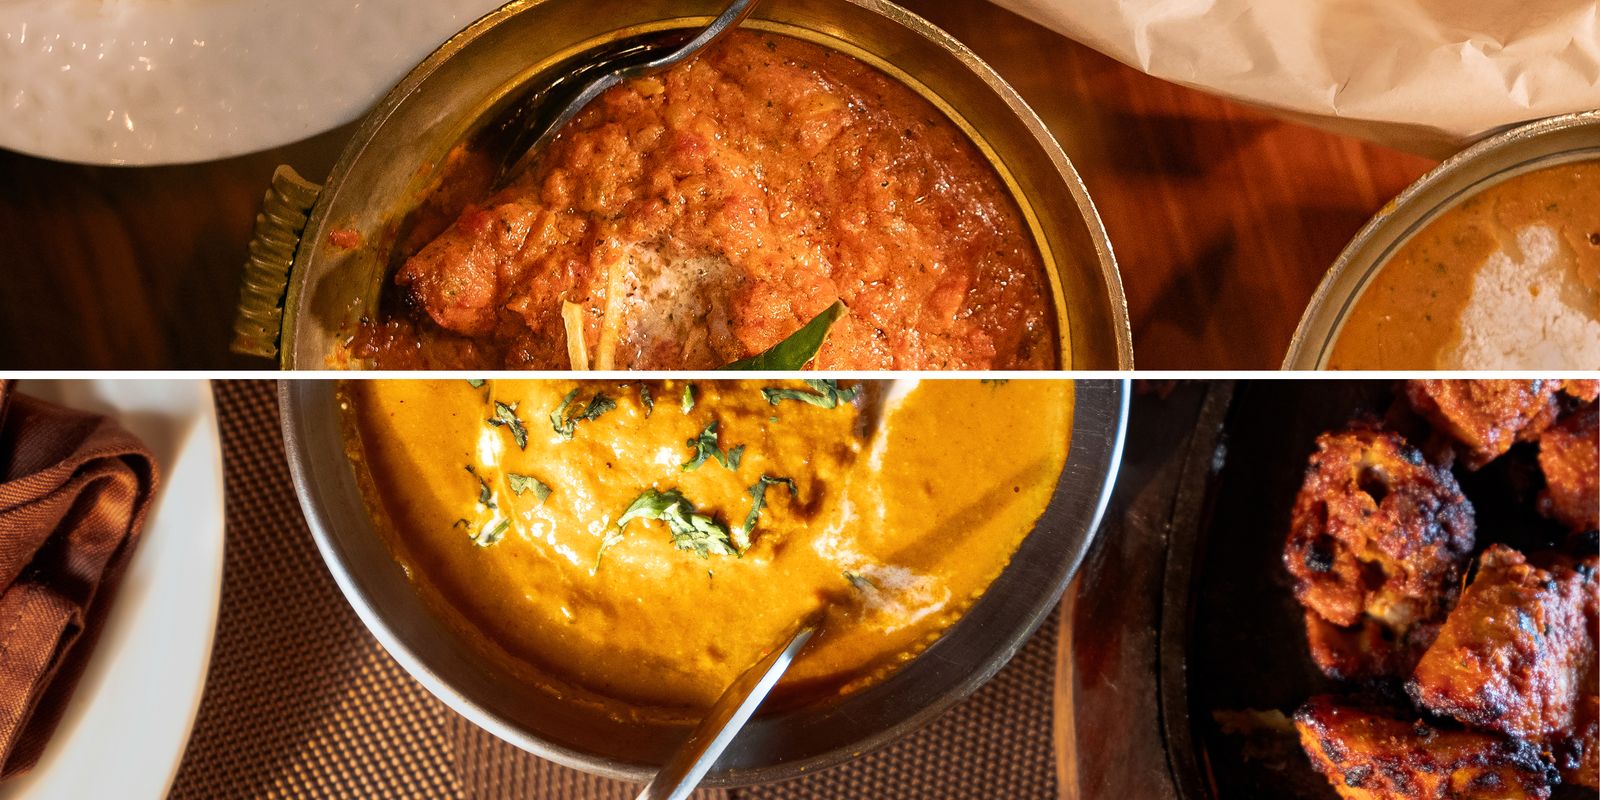 bitter curryfejd ska lösas i domstol – vem uppfann ”butter chicken”?